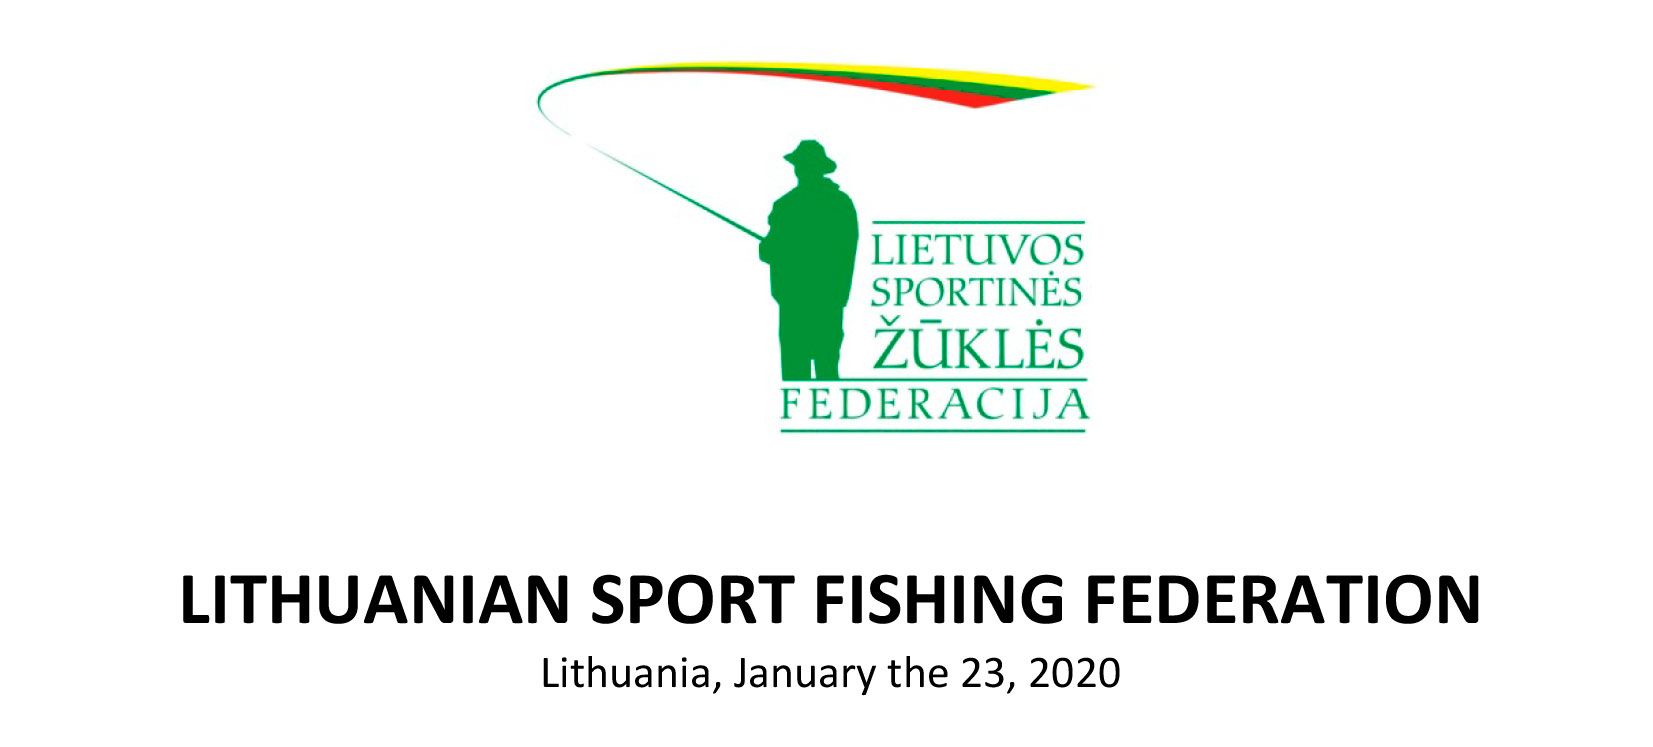 17-й Чемпионат Мира по ловле на мормышку со льда, запланированный в Литве (г. Шяуляй) отменён!